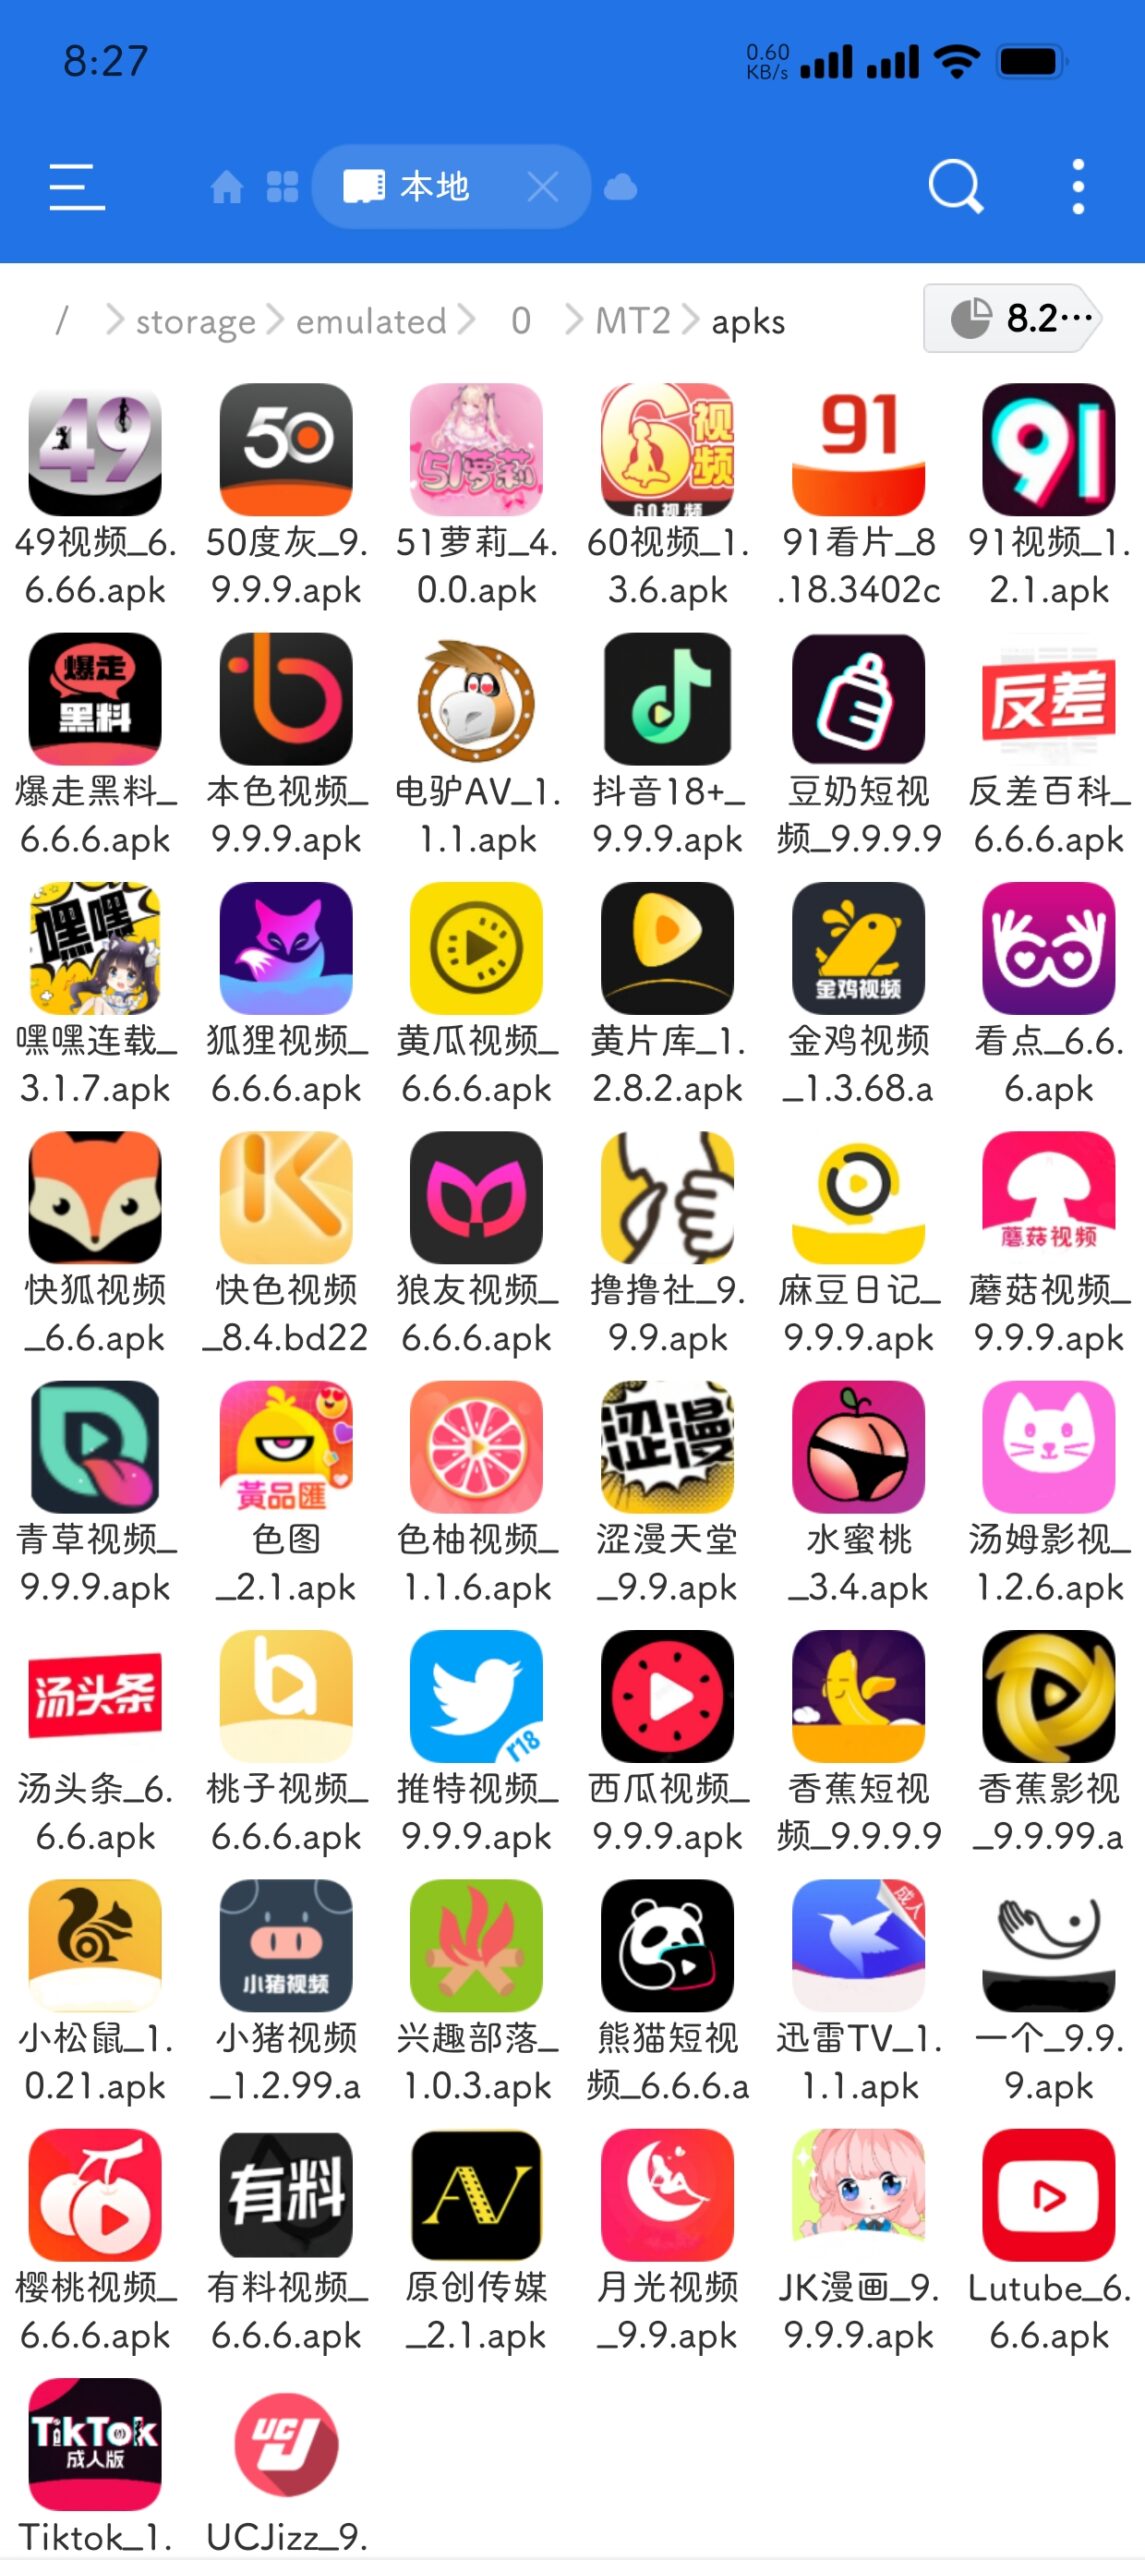 福利app50个打包-叼毛社区-全网免费资源基地-碉堡了论坛